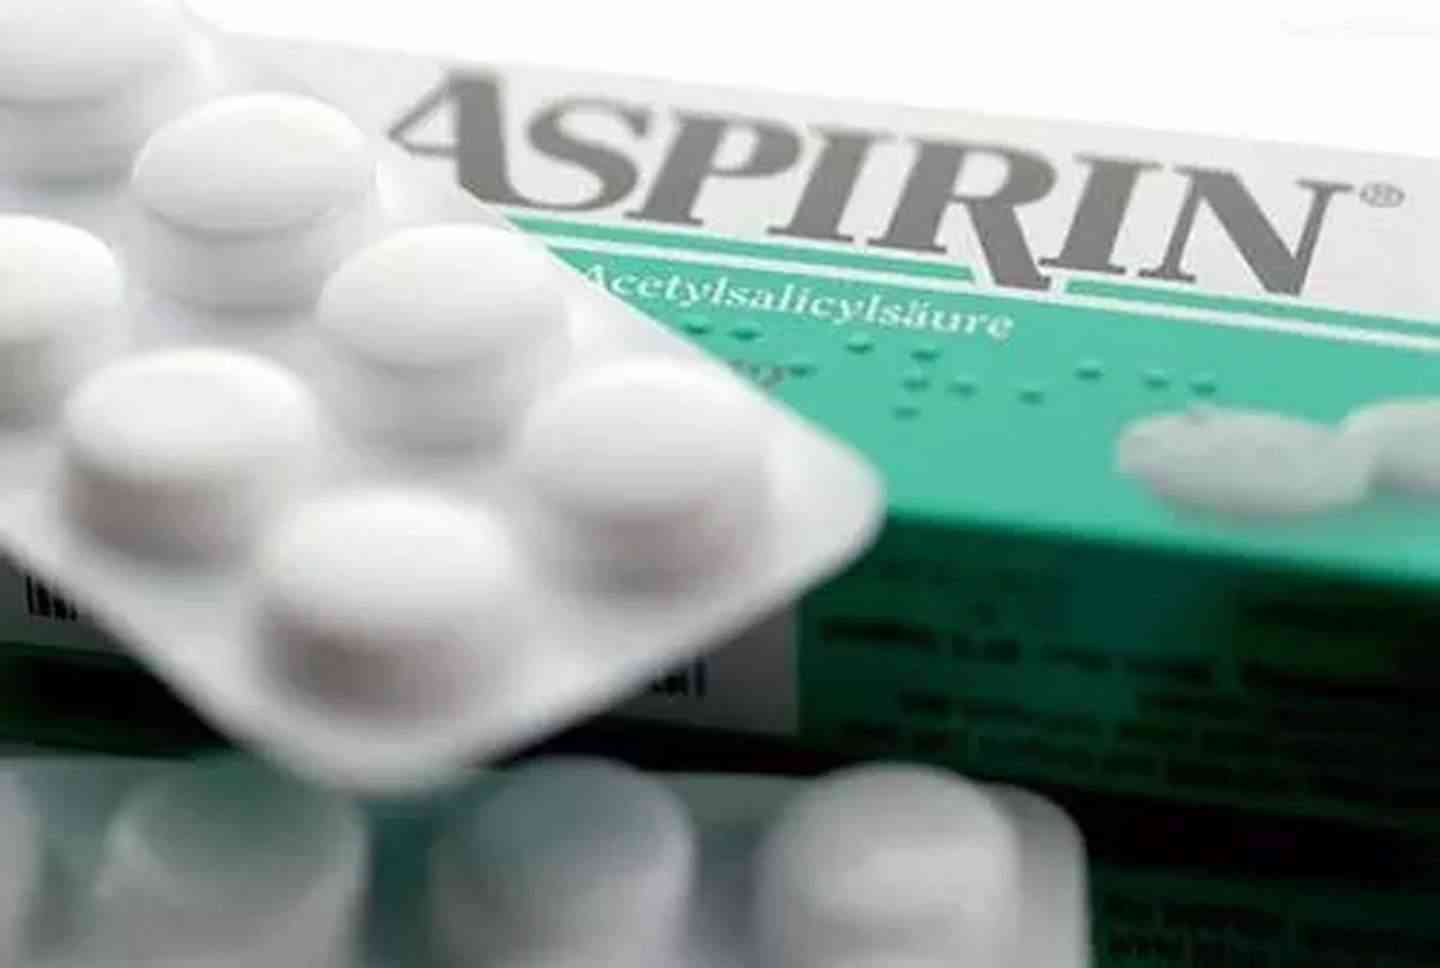 阿司匹林具有抗炎抗风湿的功效